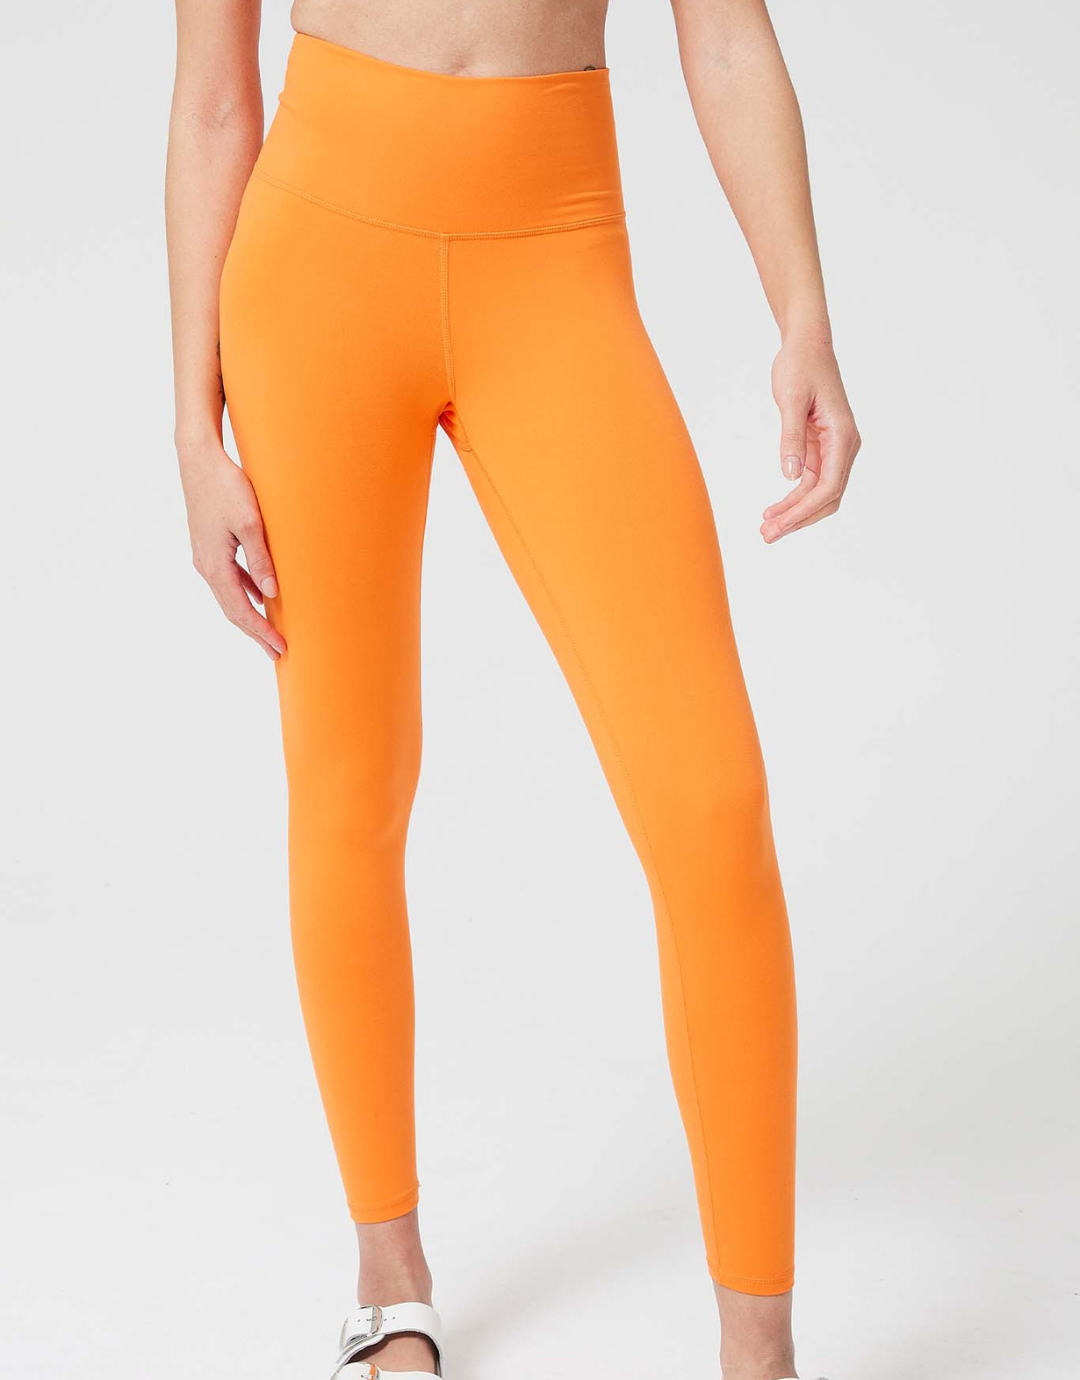 Tangerine leggings size xl - Gem